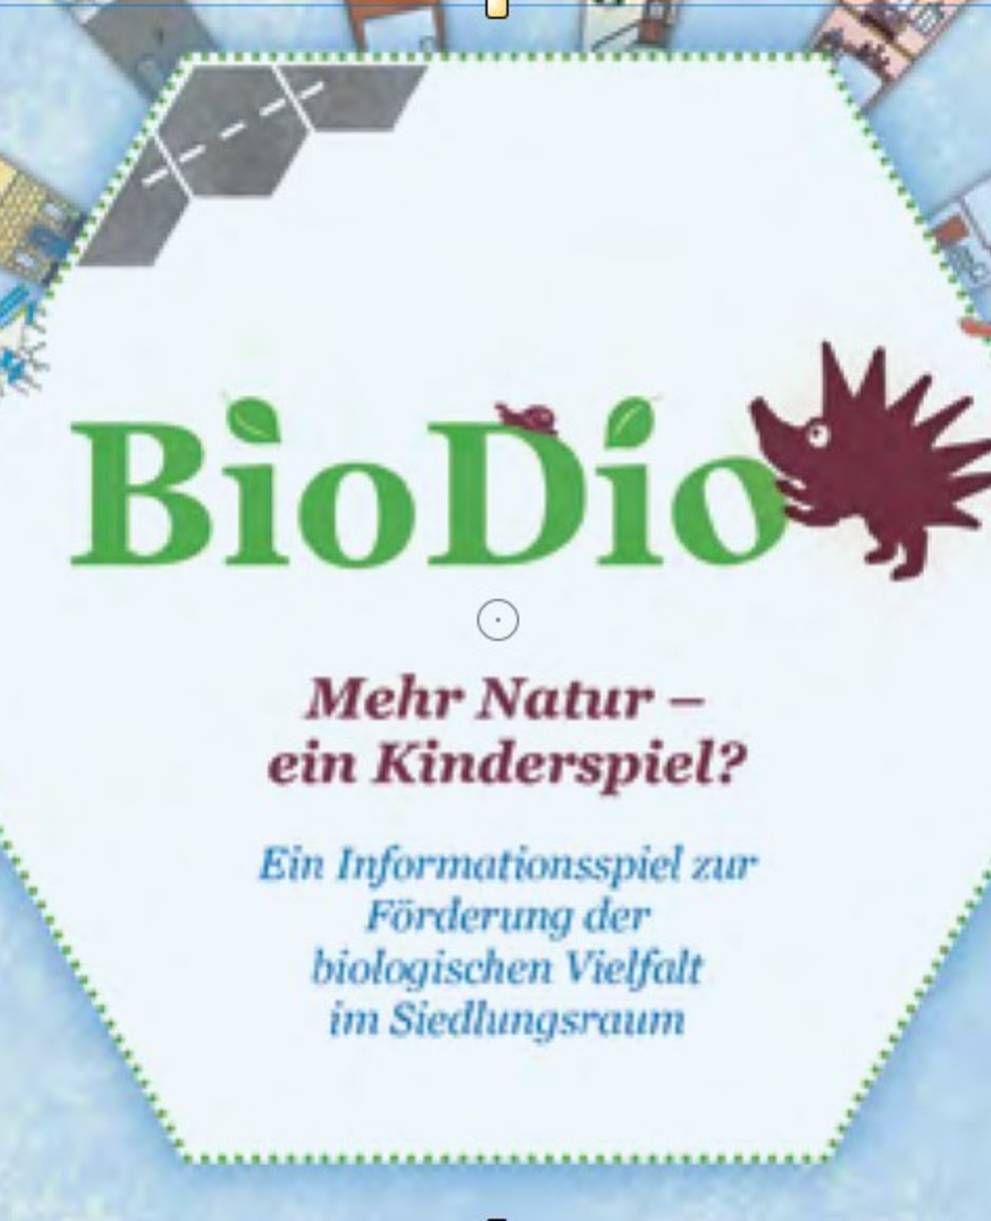 BioDio Spiel